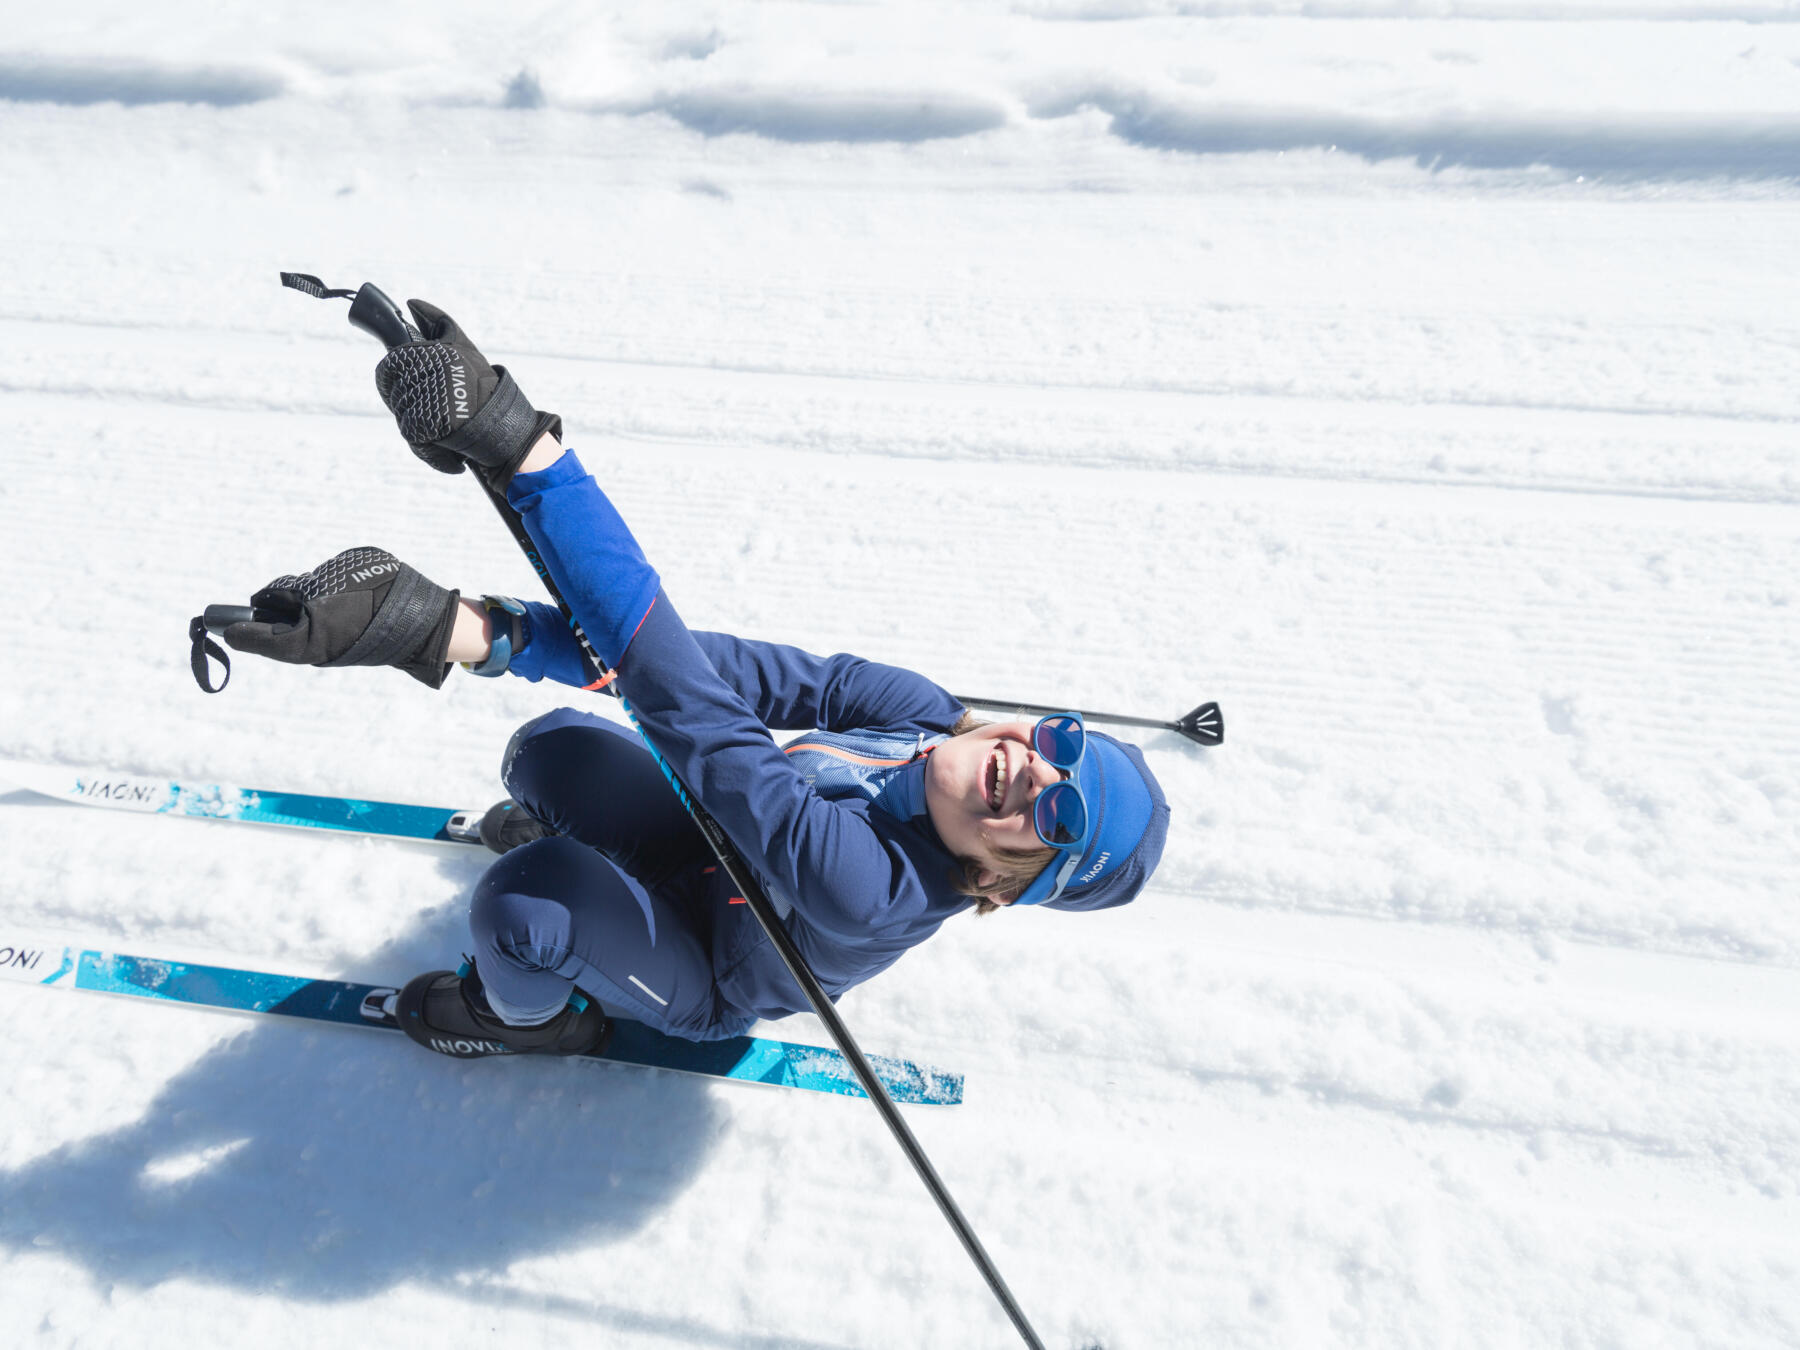 Ce qu'il faudra porter au ski pendant l'hiver 2016